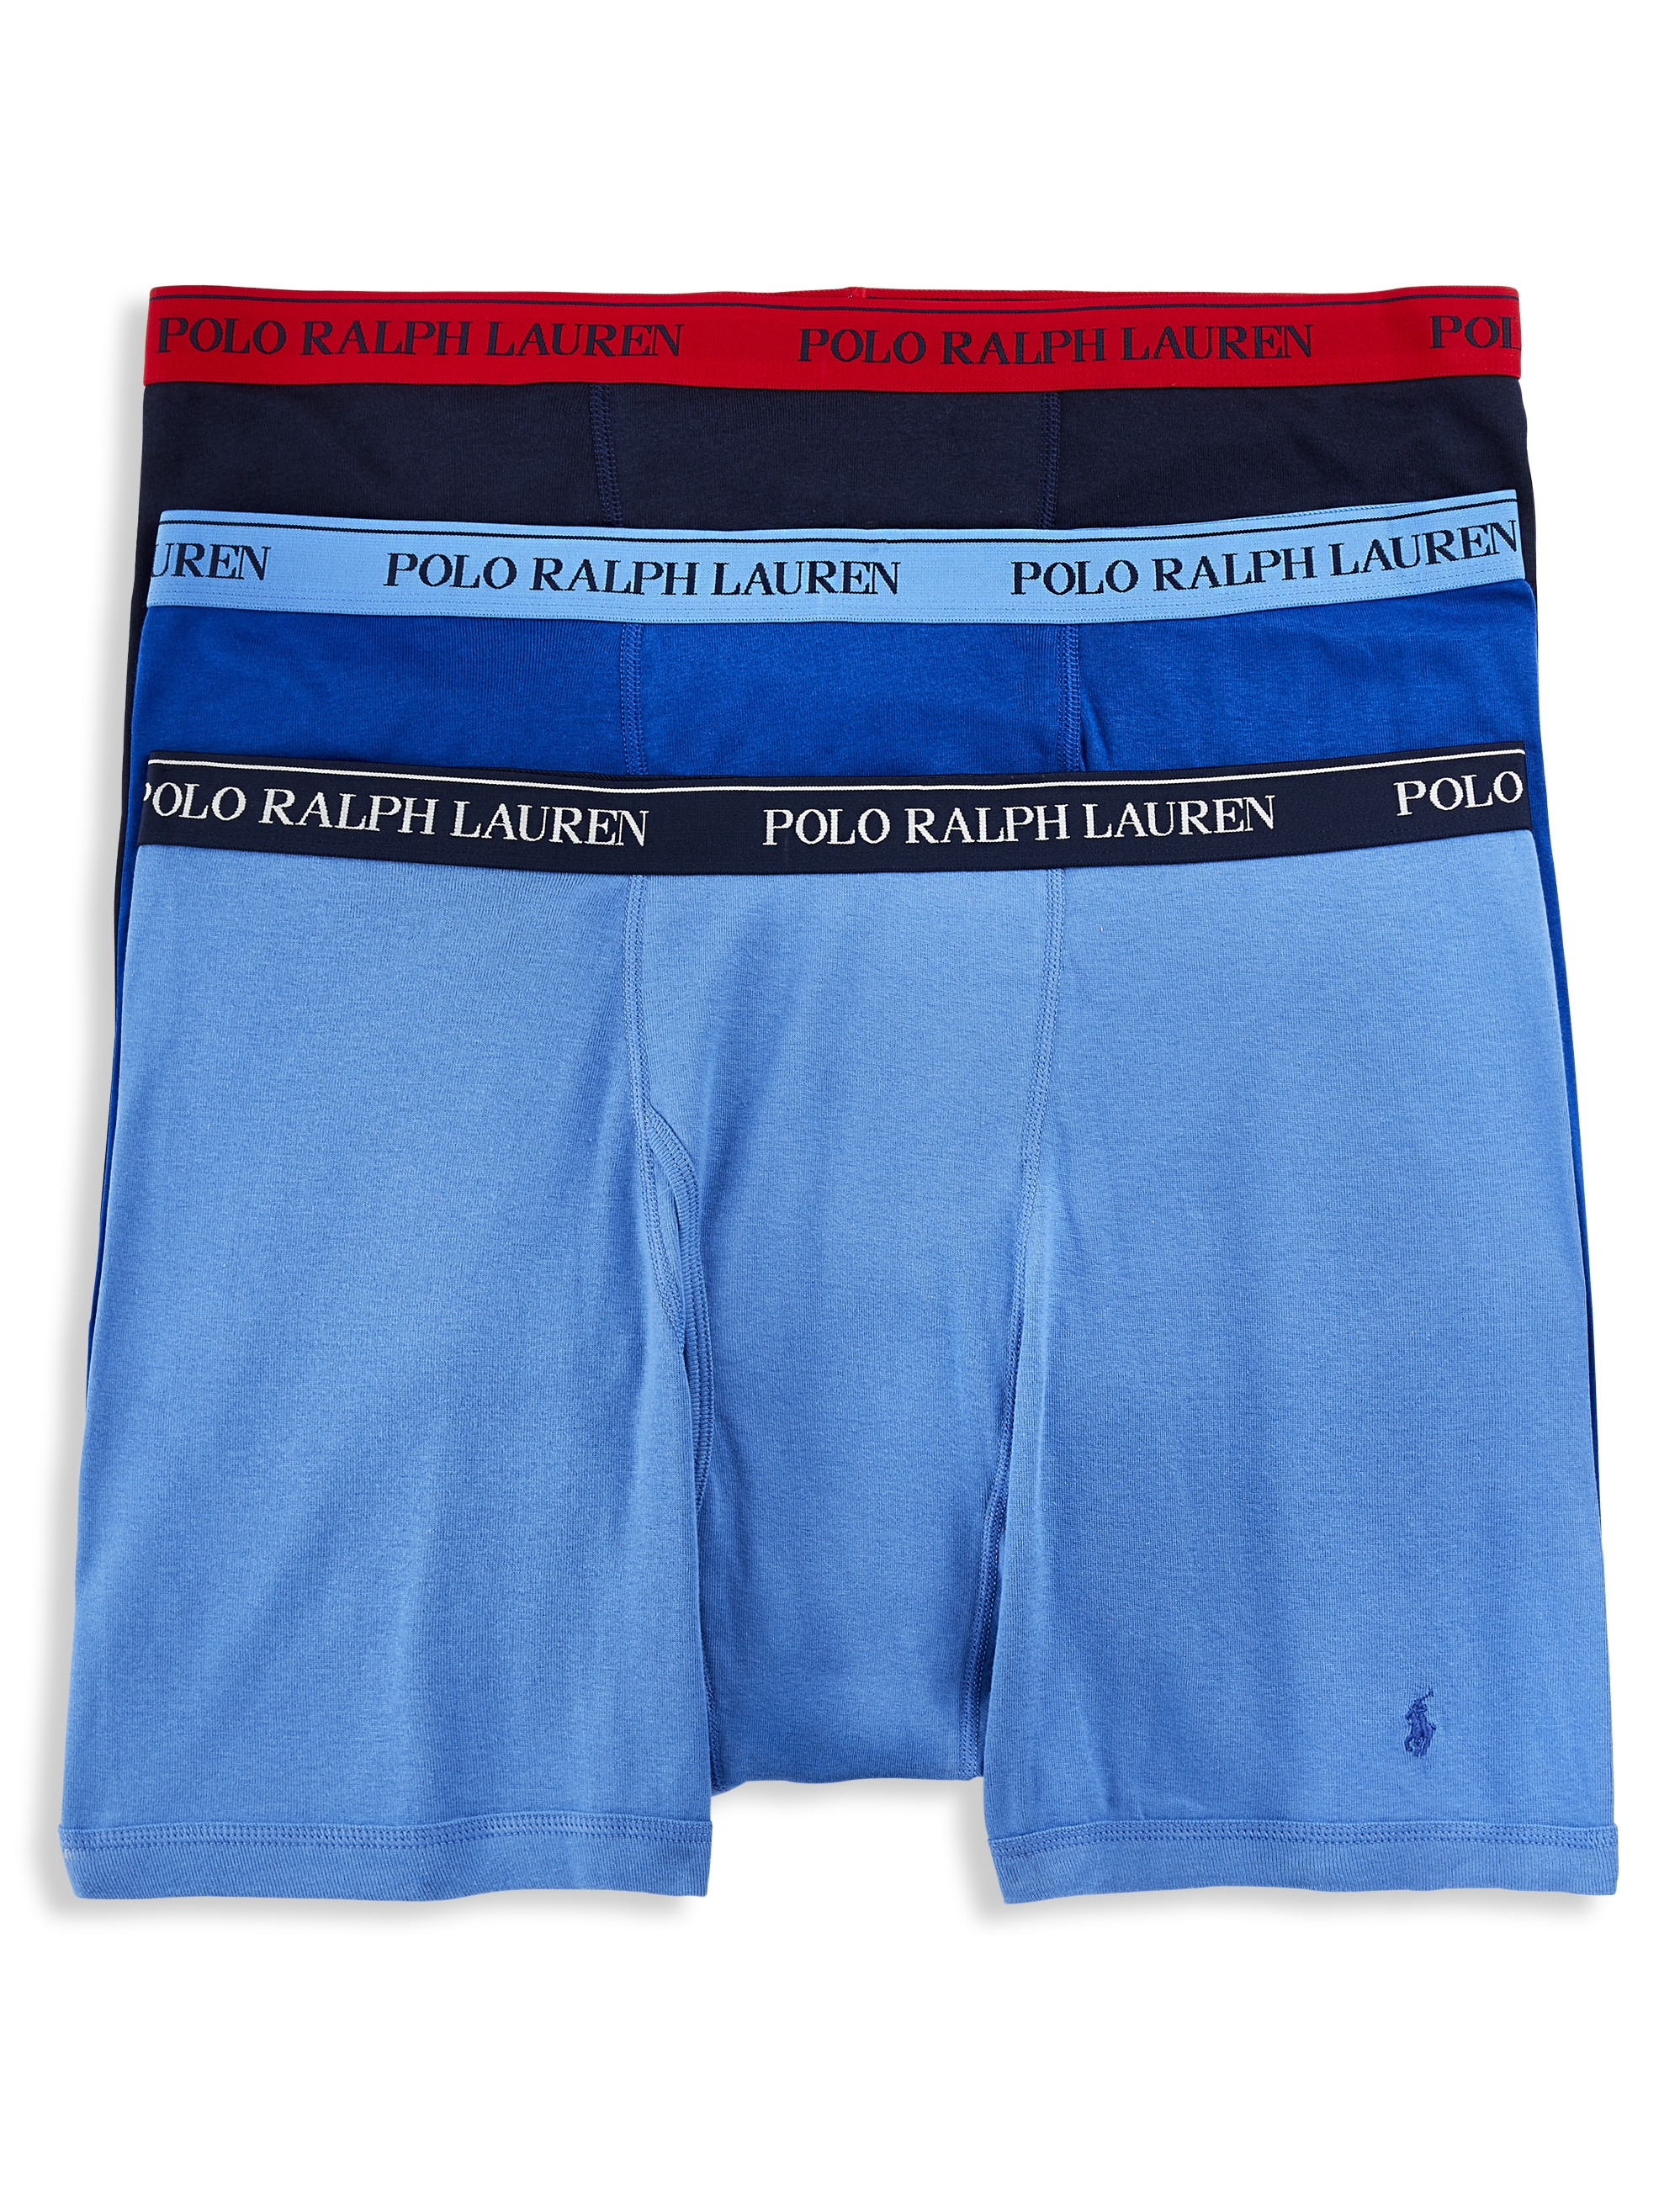  Men's Boxer Shorts - Polo Ralph Lauren / XL / Men's Boxer  Shorts / Men's Underwe: Clothing, Shoes & Jewelry